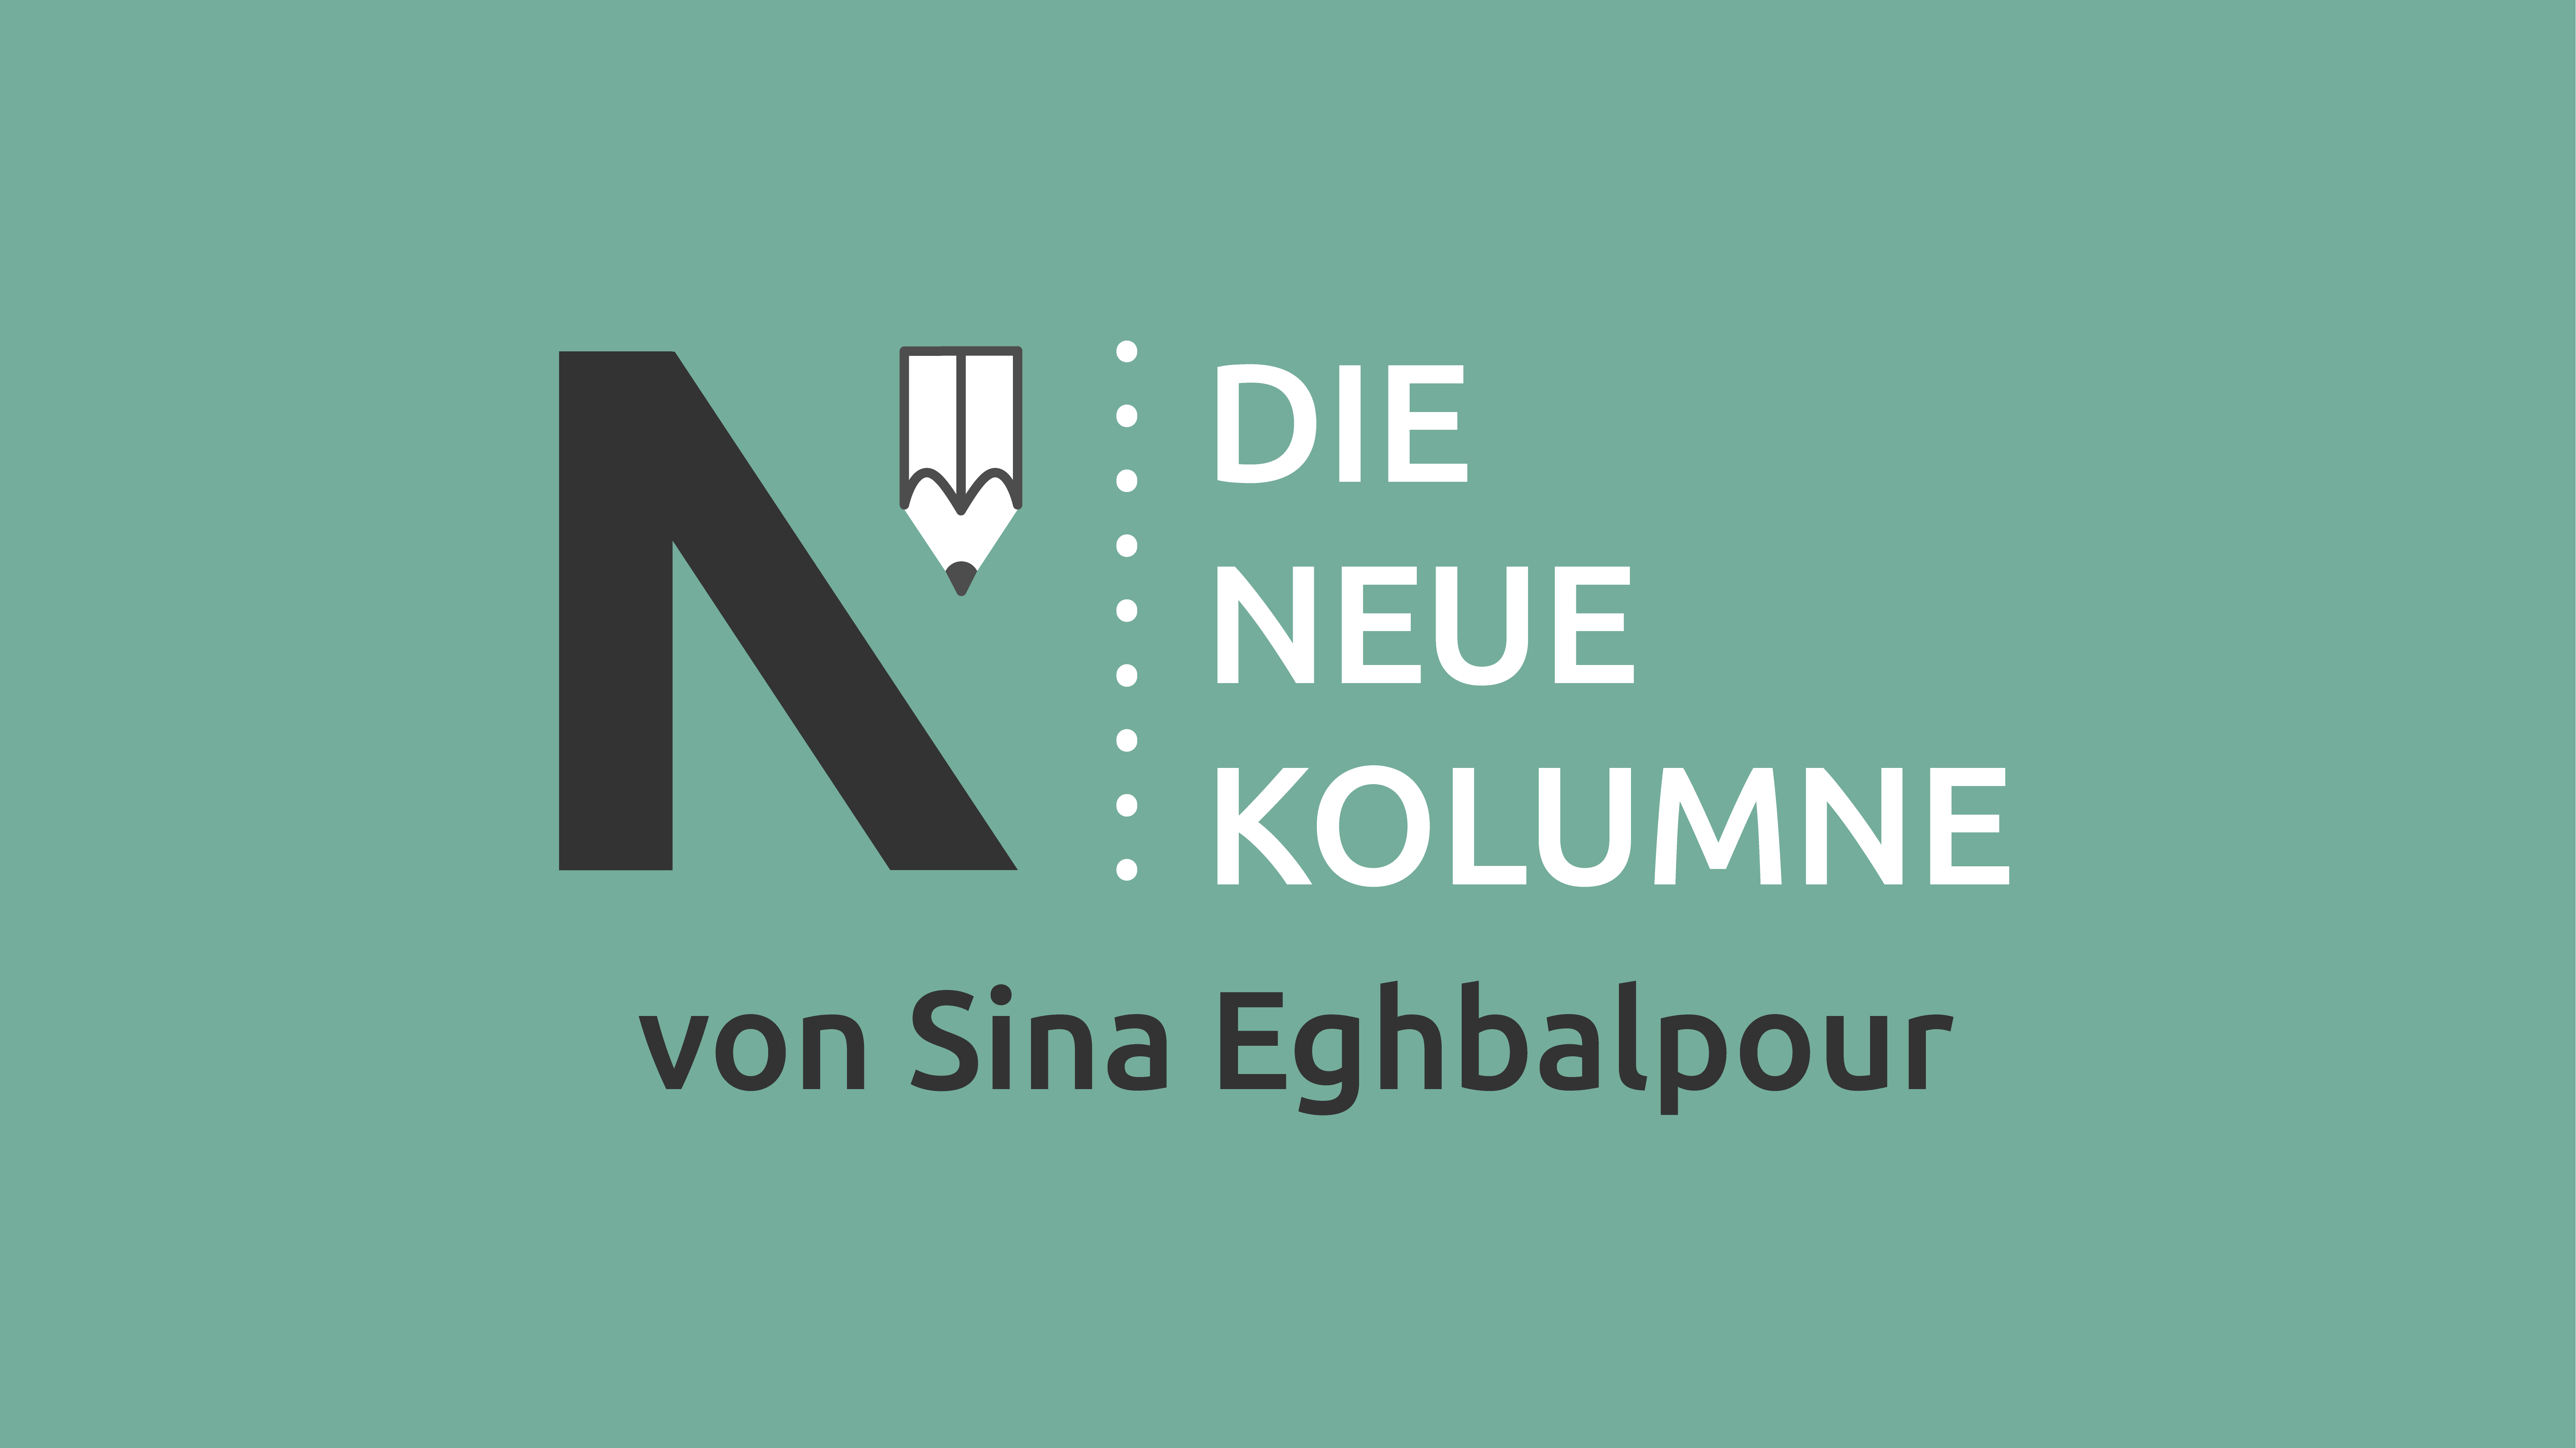 Das Logo von Die Neue Norm auf grünem Grund. Rechts davon steht: Die Neue Kolumne. Unten steht: Von Sina Eghbalpour.